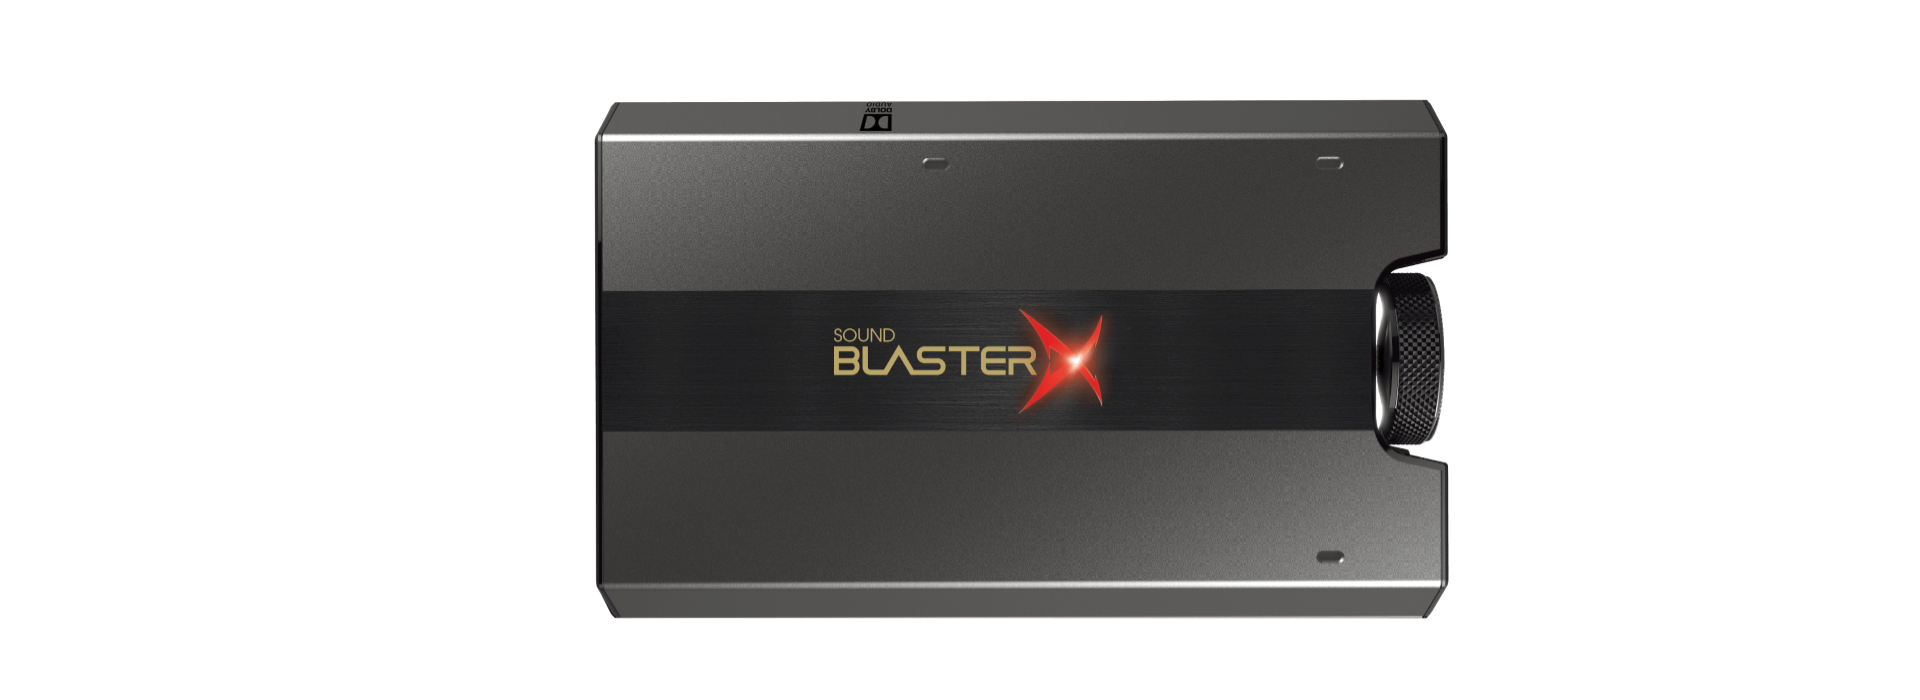 SBX-G6 Sound blaster X G6